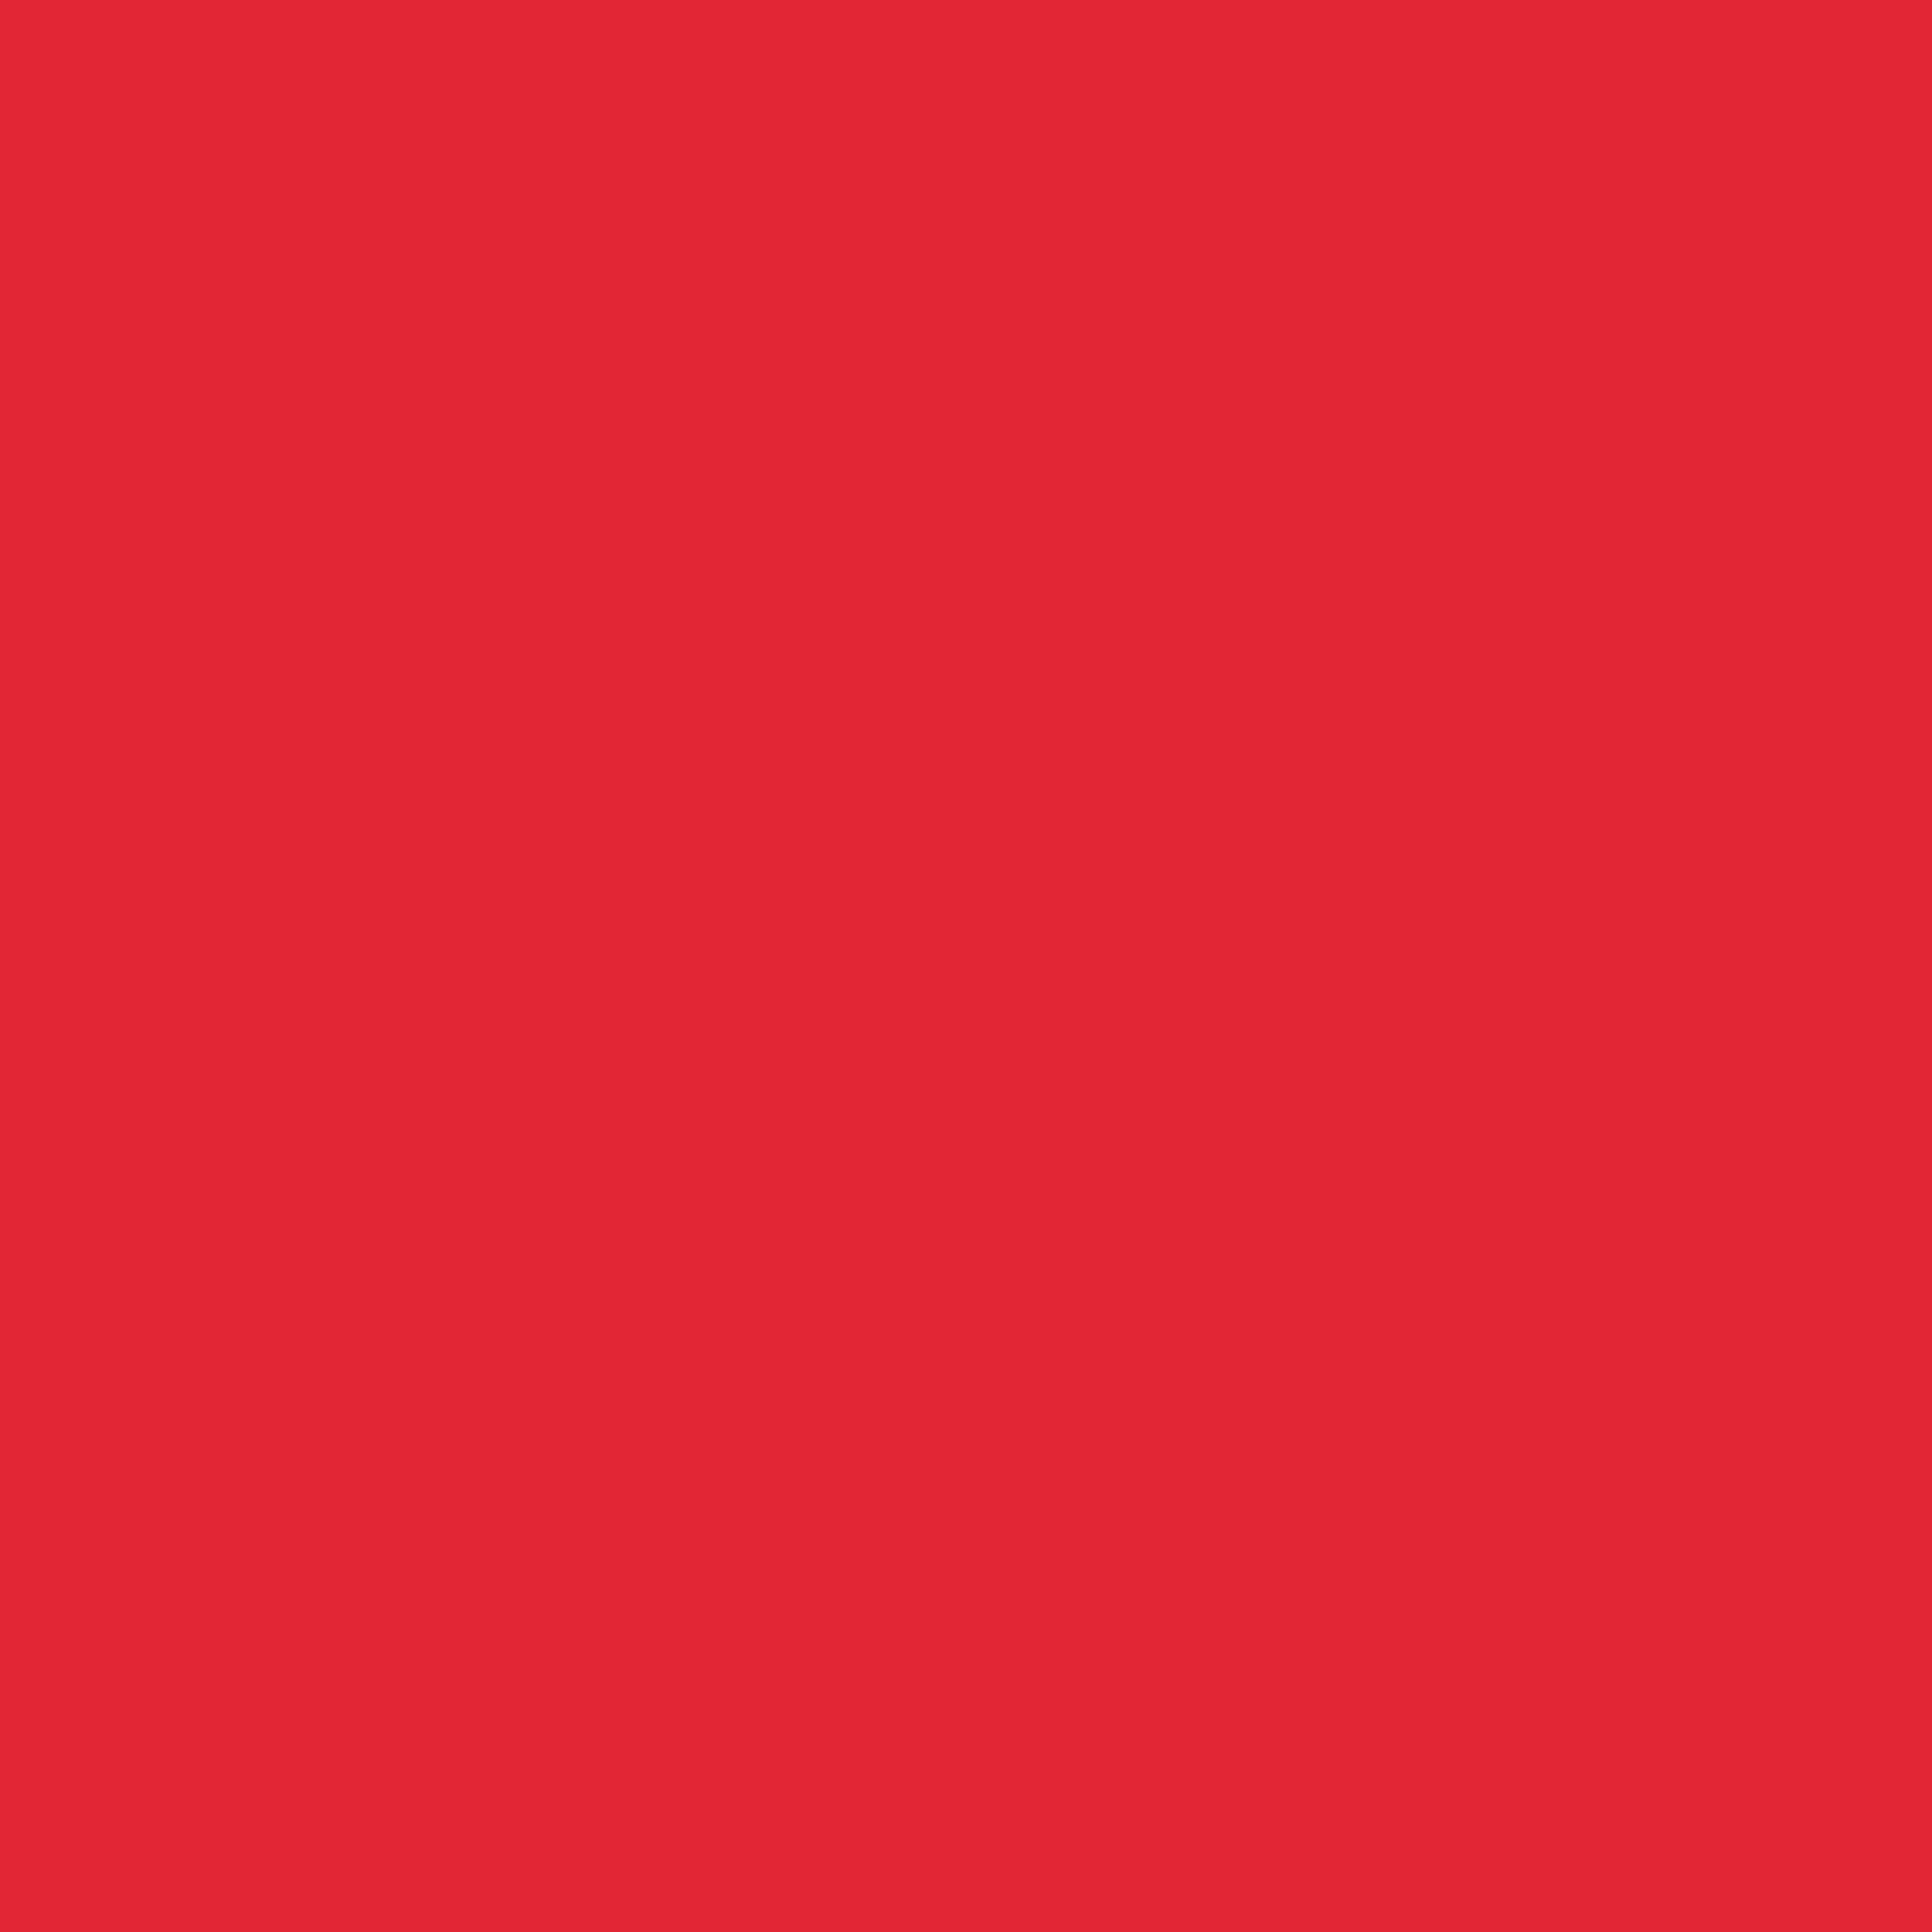 2732x2732 Alizarin Crimson Solid Color Background